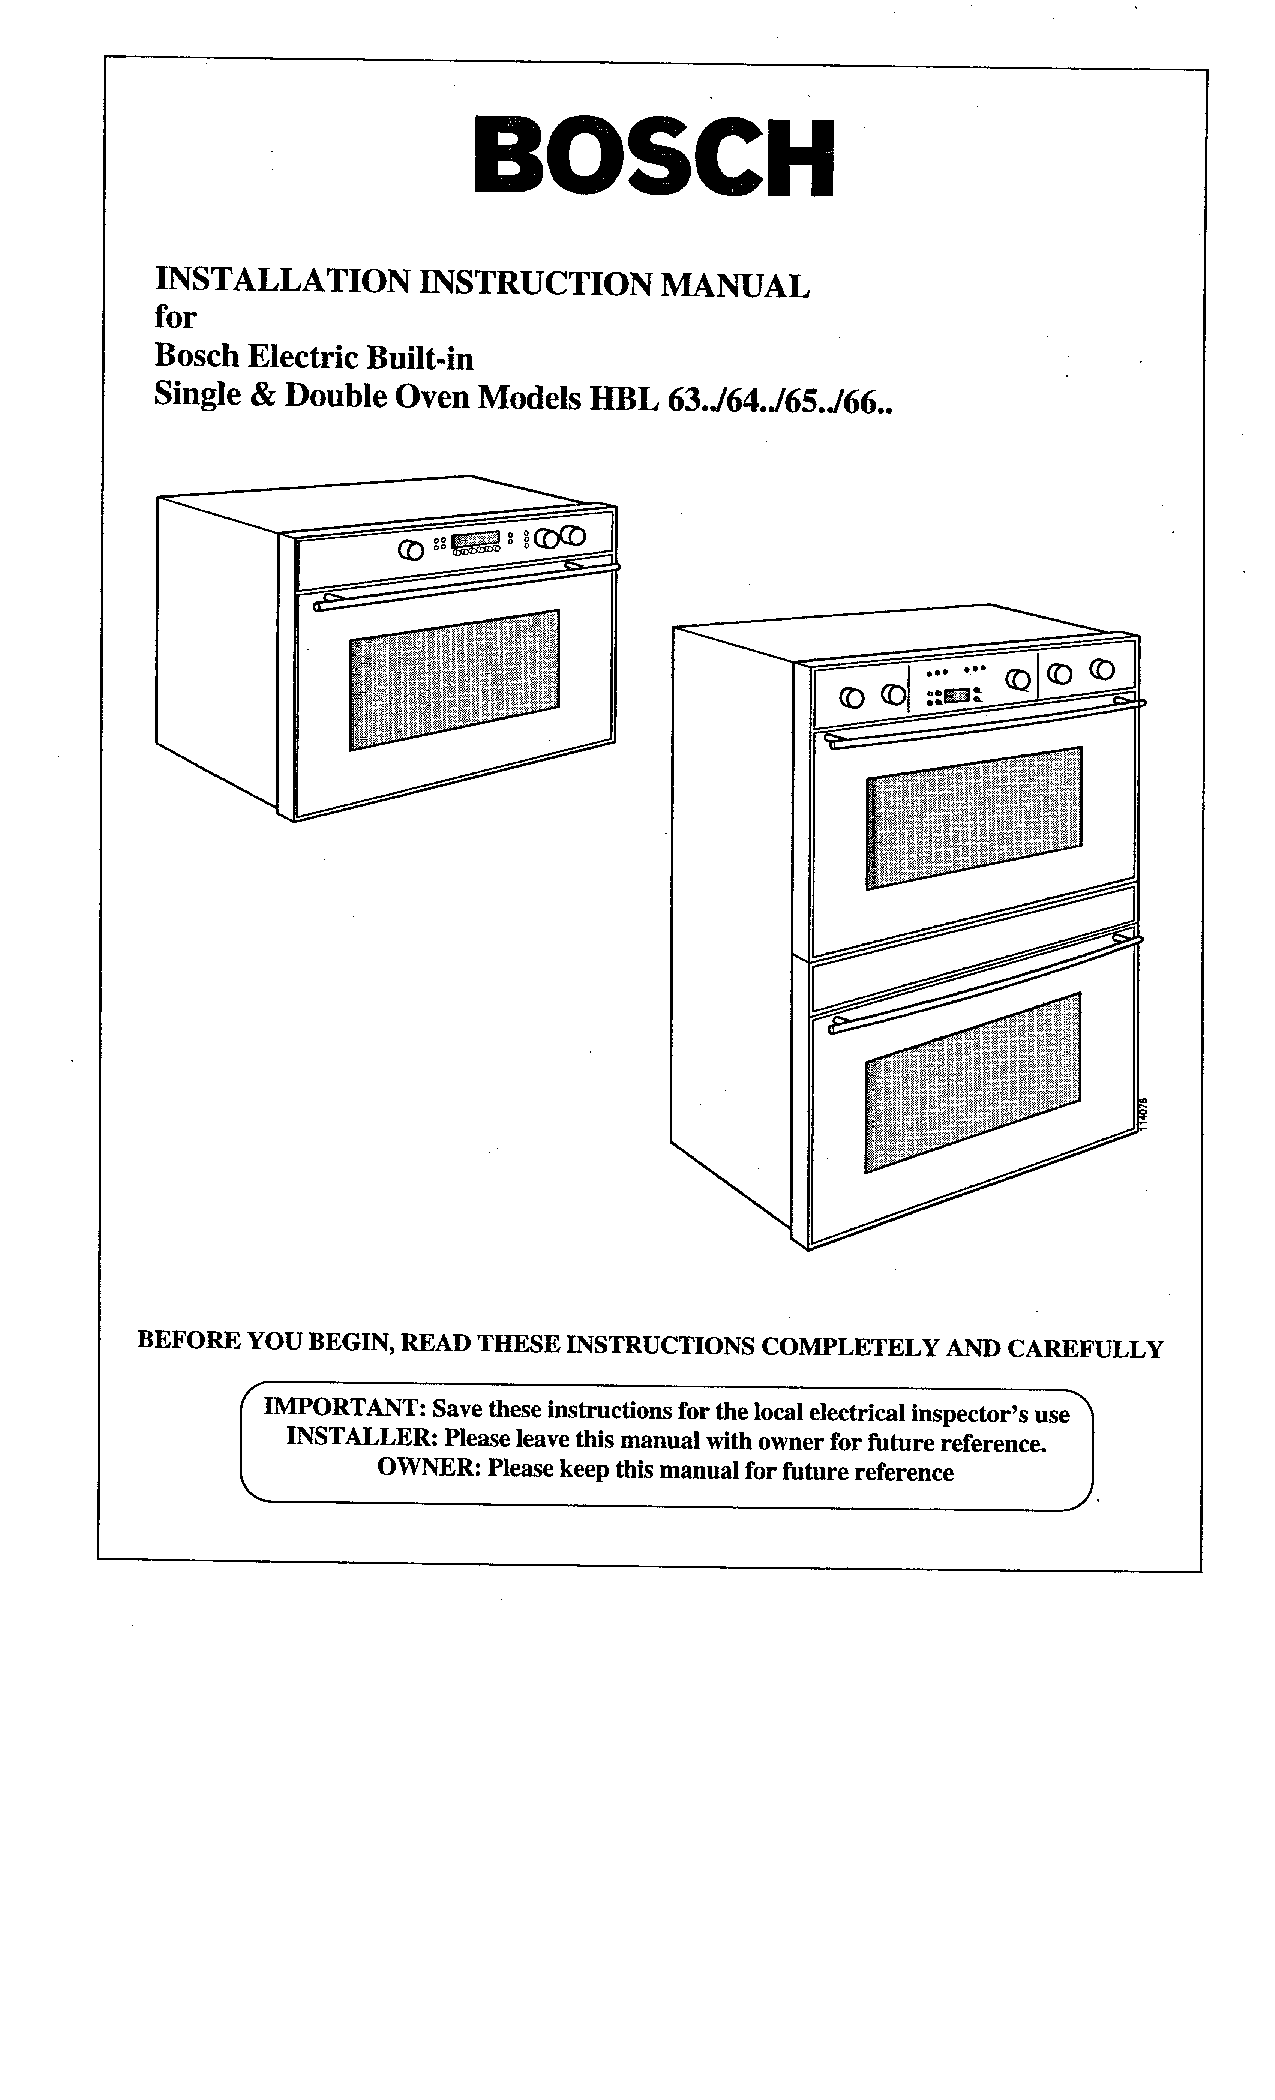 Bosch Appliances Double Oven, HBL 64, HBL 65, HBL 66, HBL 63 User Manual